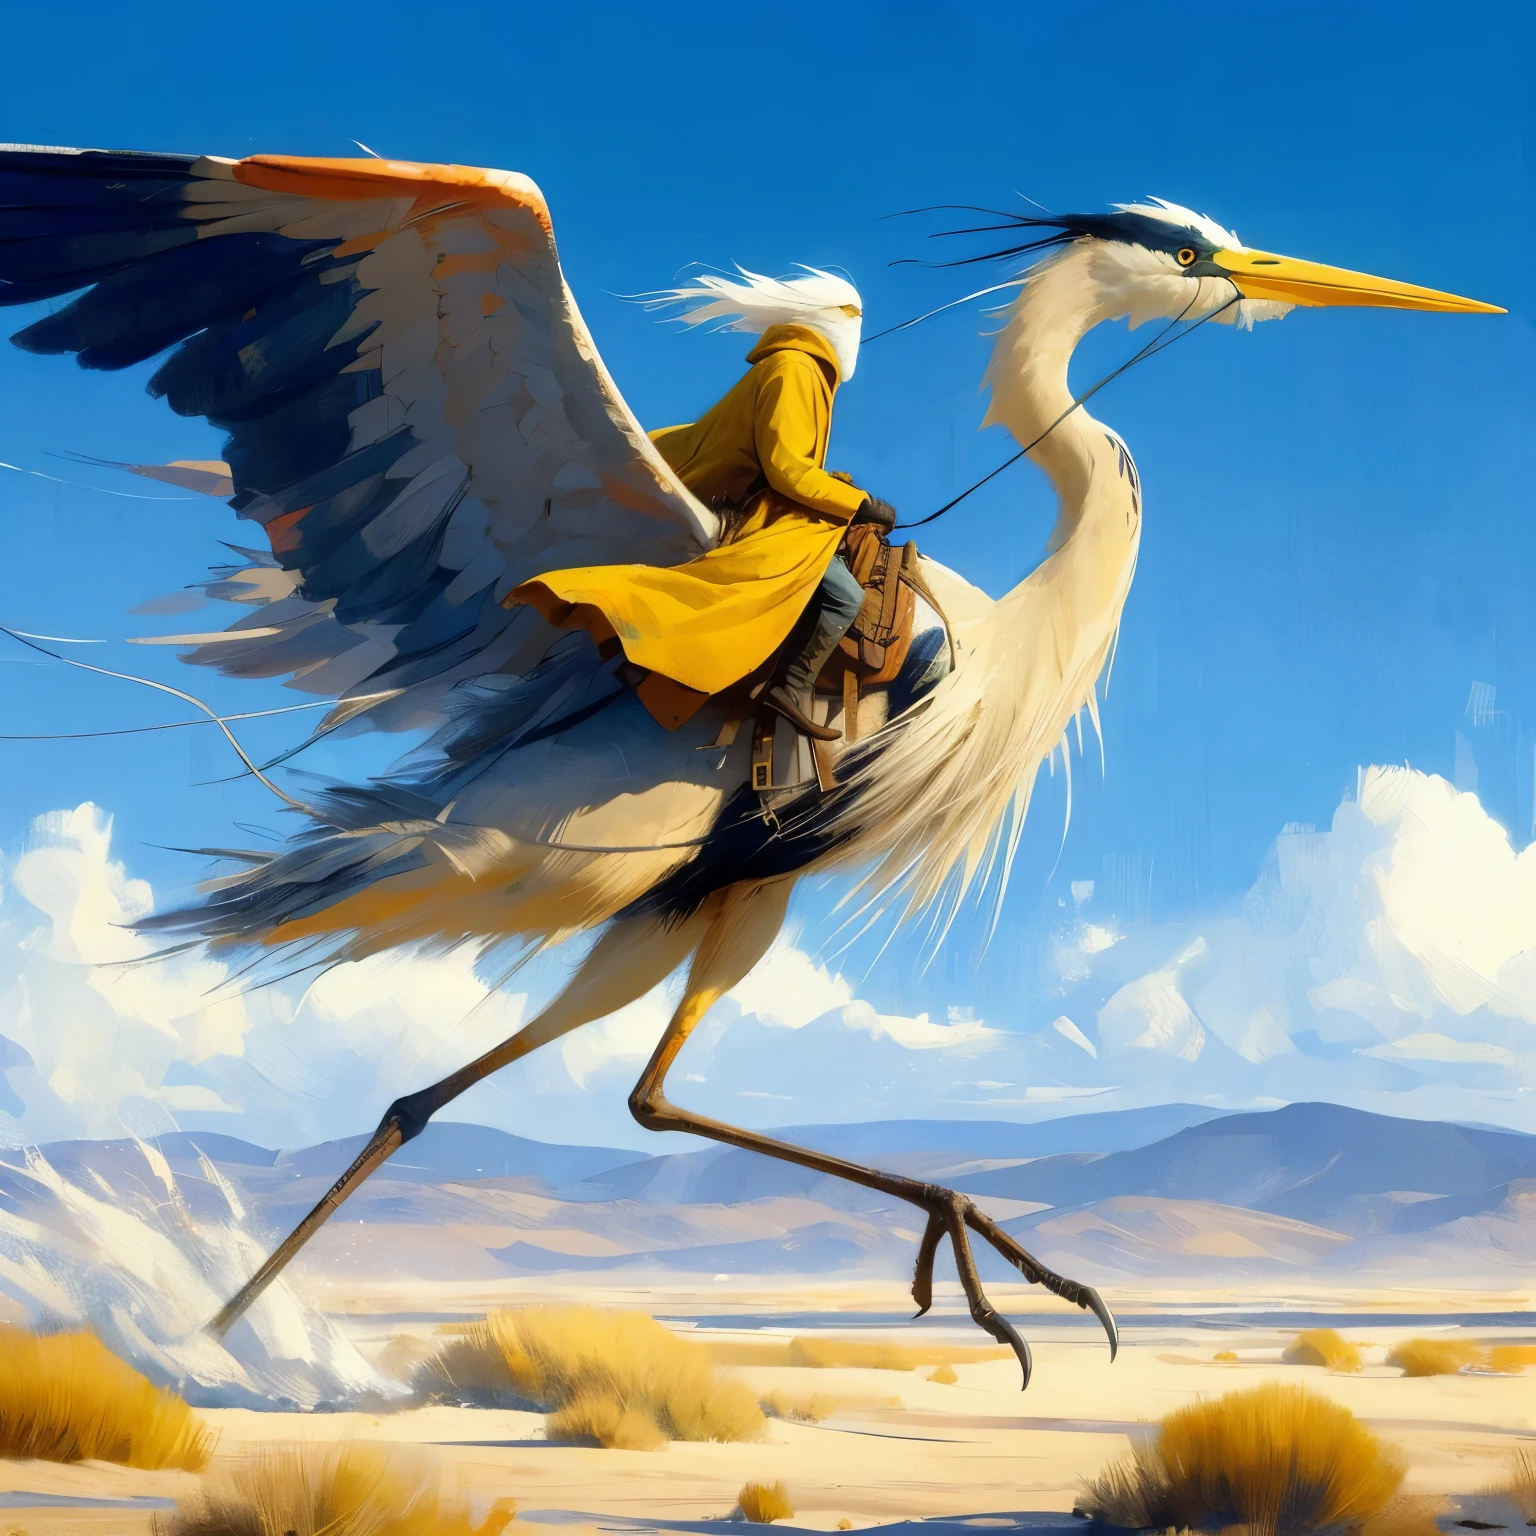 Erschaffe eine Hauptfigur, einen 20 Fuß großen, zweibeinigen Vogel, der einen weißhaarigen Mann in einem Sattel trägt, zweibeiniger Vogel, der dem großen blauen Reiher ähnelt, der Vogel ist gesät, der Vogel hat nur zwei Beine, Vogel hat nur zwei Beine, in einer wunderschönen flachen Wüstenlandschaft eines 3D-Videospiels, dynamische pose, auf einem riesigen, hohen Blaureiher reitend, Jean Giraud, extreme Totale, im Spritzimpressionismus-Kunststil, Die Hauptfigur trägt einen langen gelbbraunen Trenchcoat mit Kapuze und getönter Schutzbrille, endlose Meilen wehender Sanddünen, Reiter in weiter Ferne, blauer Himmel mit wogenden weißen Wolken rosa gefärbt, wehender kochender wirbelnder Wind, wehende Grasblätter, dunkelgelb und azurblau, majestätisch, beeindruckende Seestücke, fotorealistische Darstellung, anmutiges Gleichgewicht, wimmelbilder, Andrew Wyeth, orange, Grasblätter, im Kunststil von Jean Giraud,flynnrider
